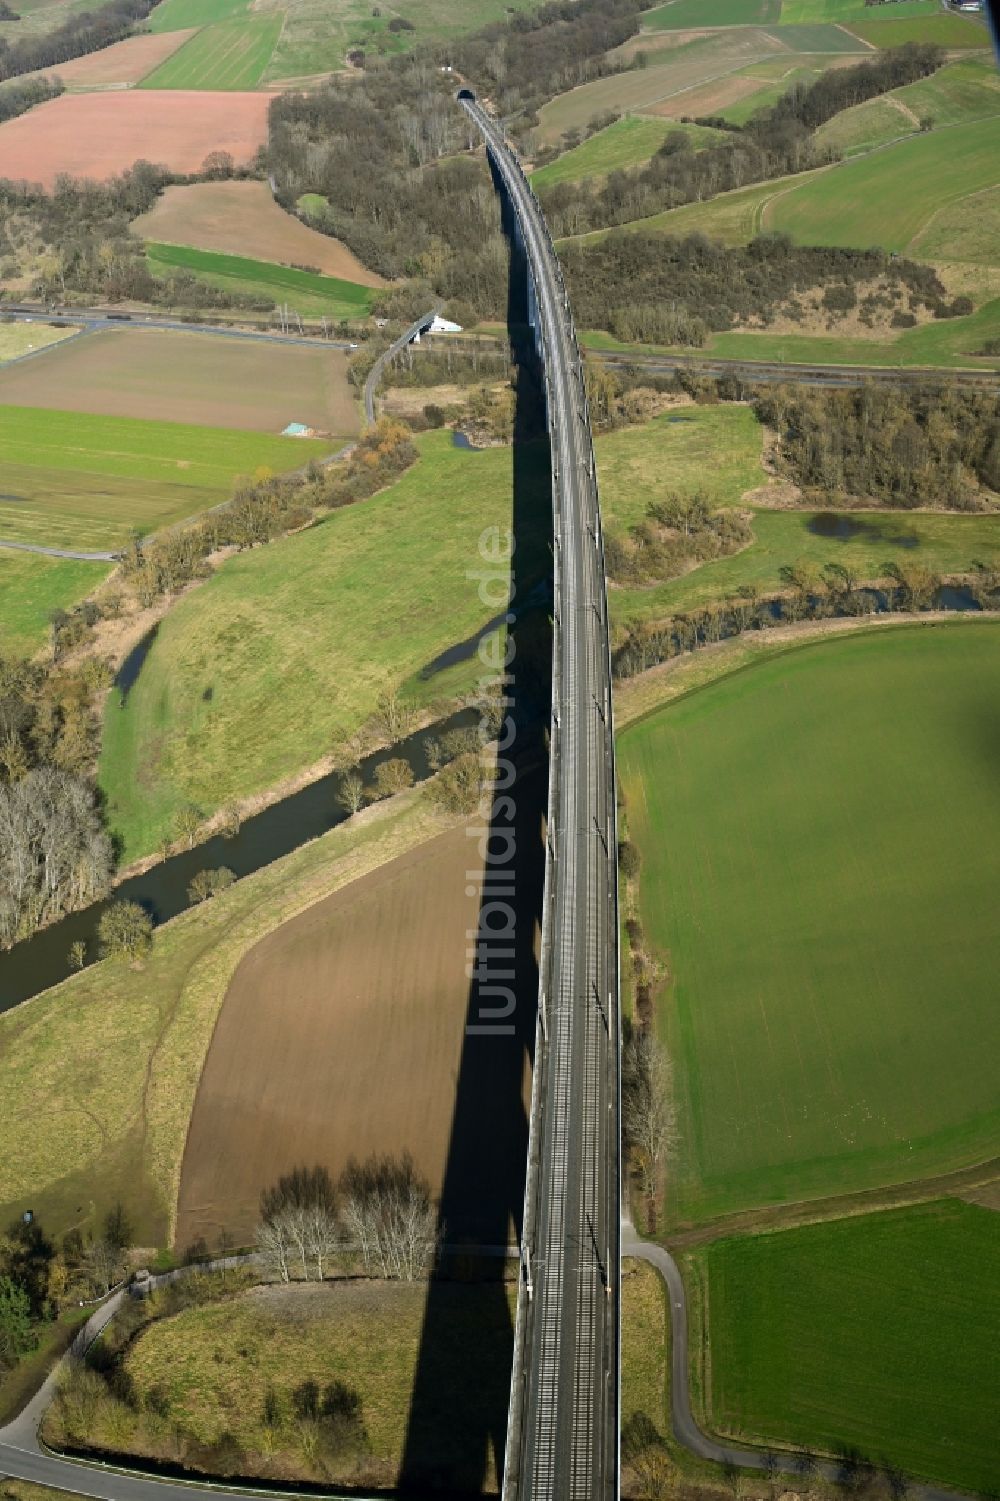 Luftbild Morschen - Bahn- Brückenbauwerk Fuldatalbrücke Morschen in Morschen im Bundesland Hessen, Deutschland